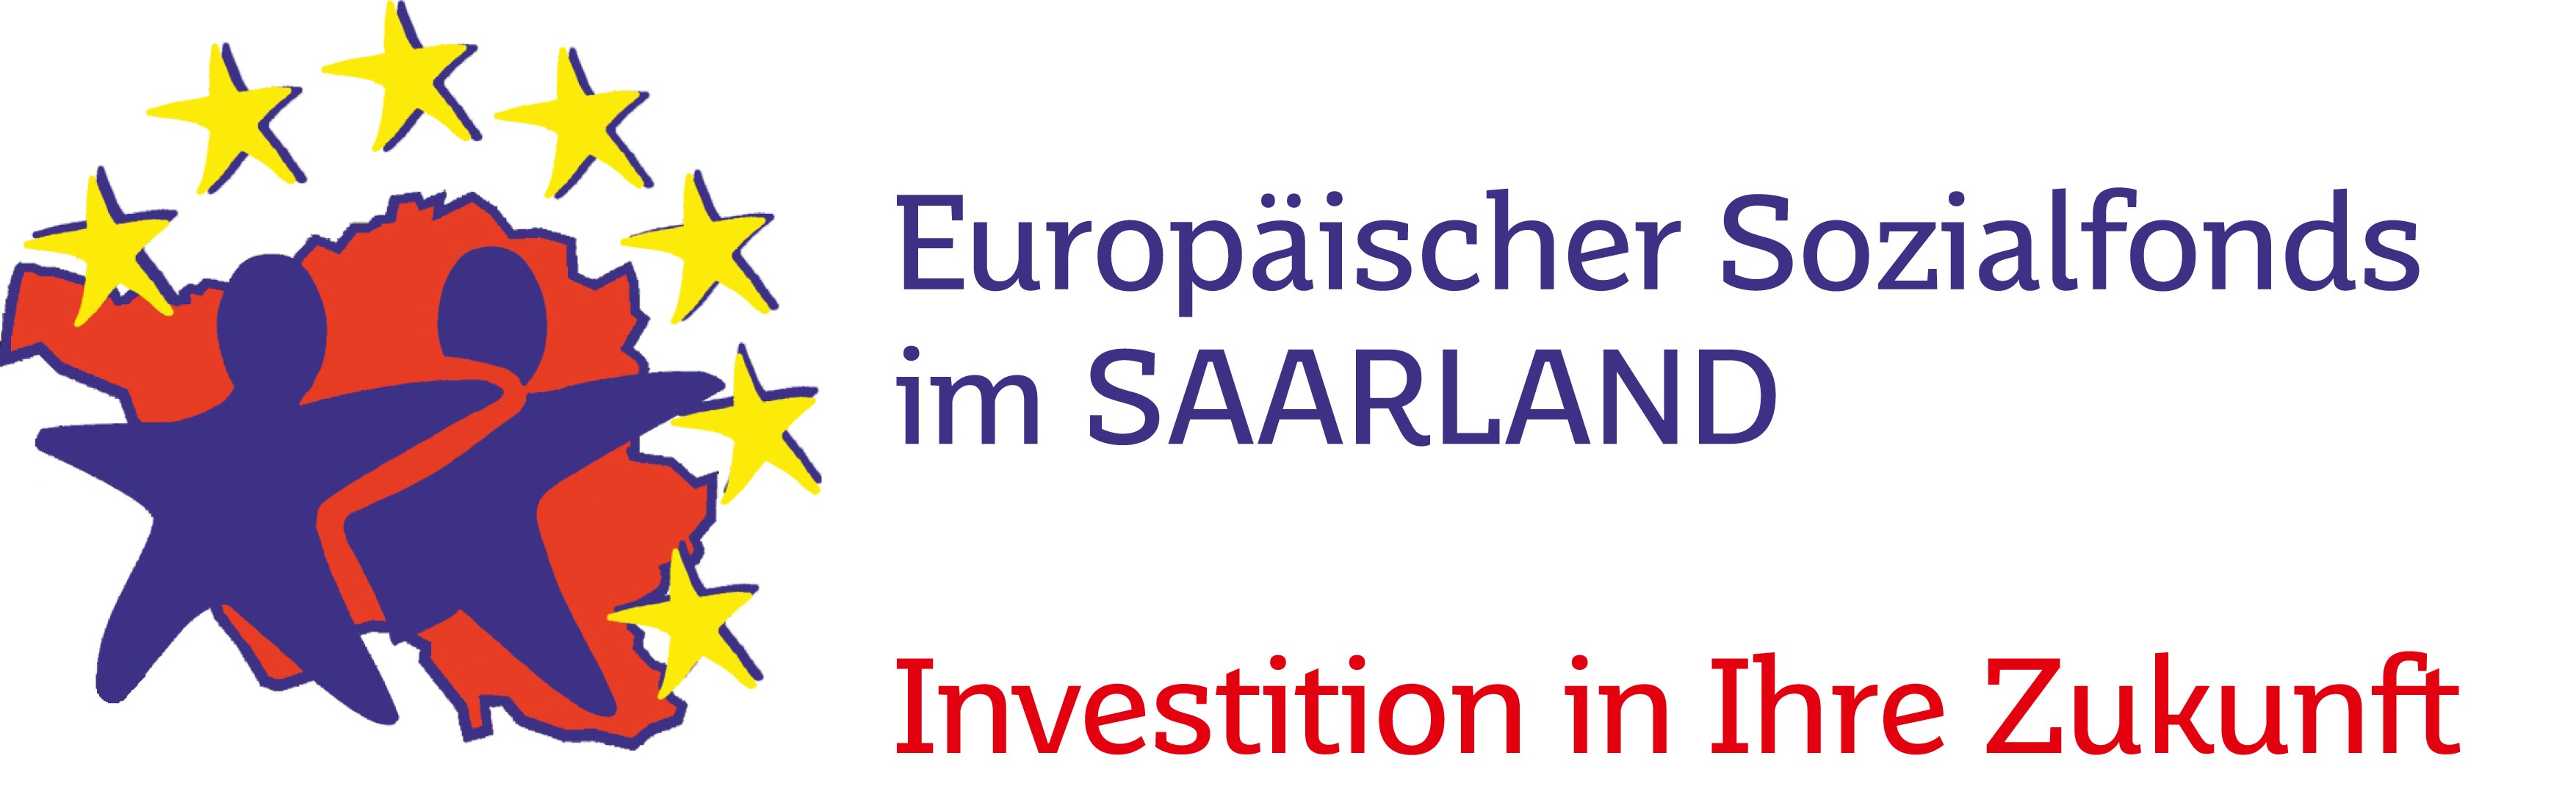 Europäischer Sozialfonds im SAARLAND